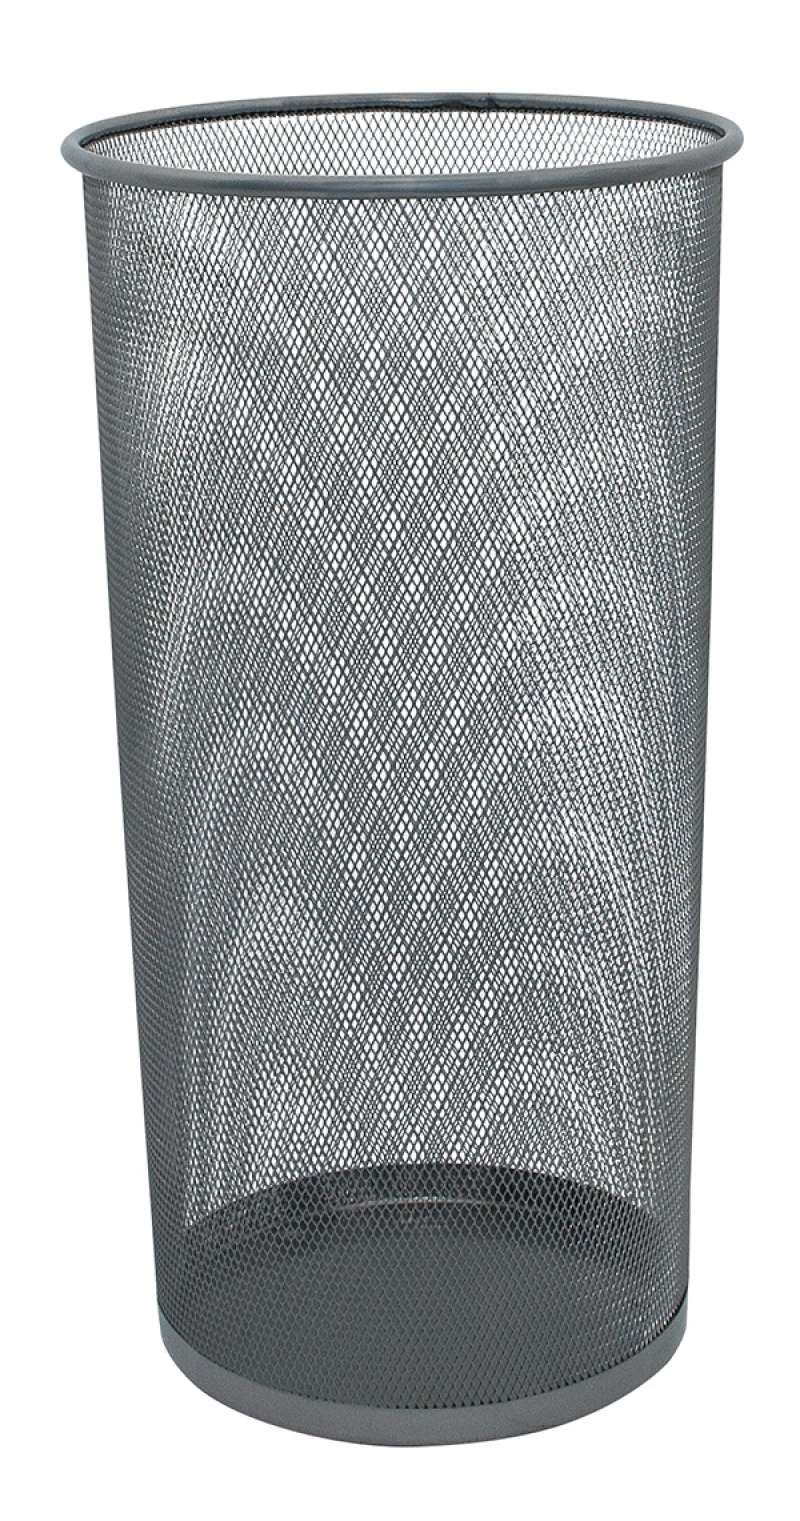 Stojak na parasole Q-CONNECT Office Set, metalowy, srebrny